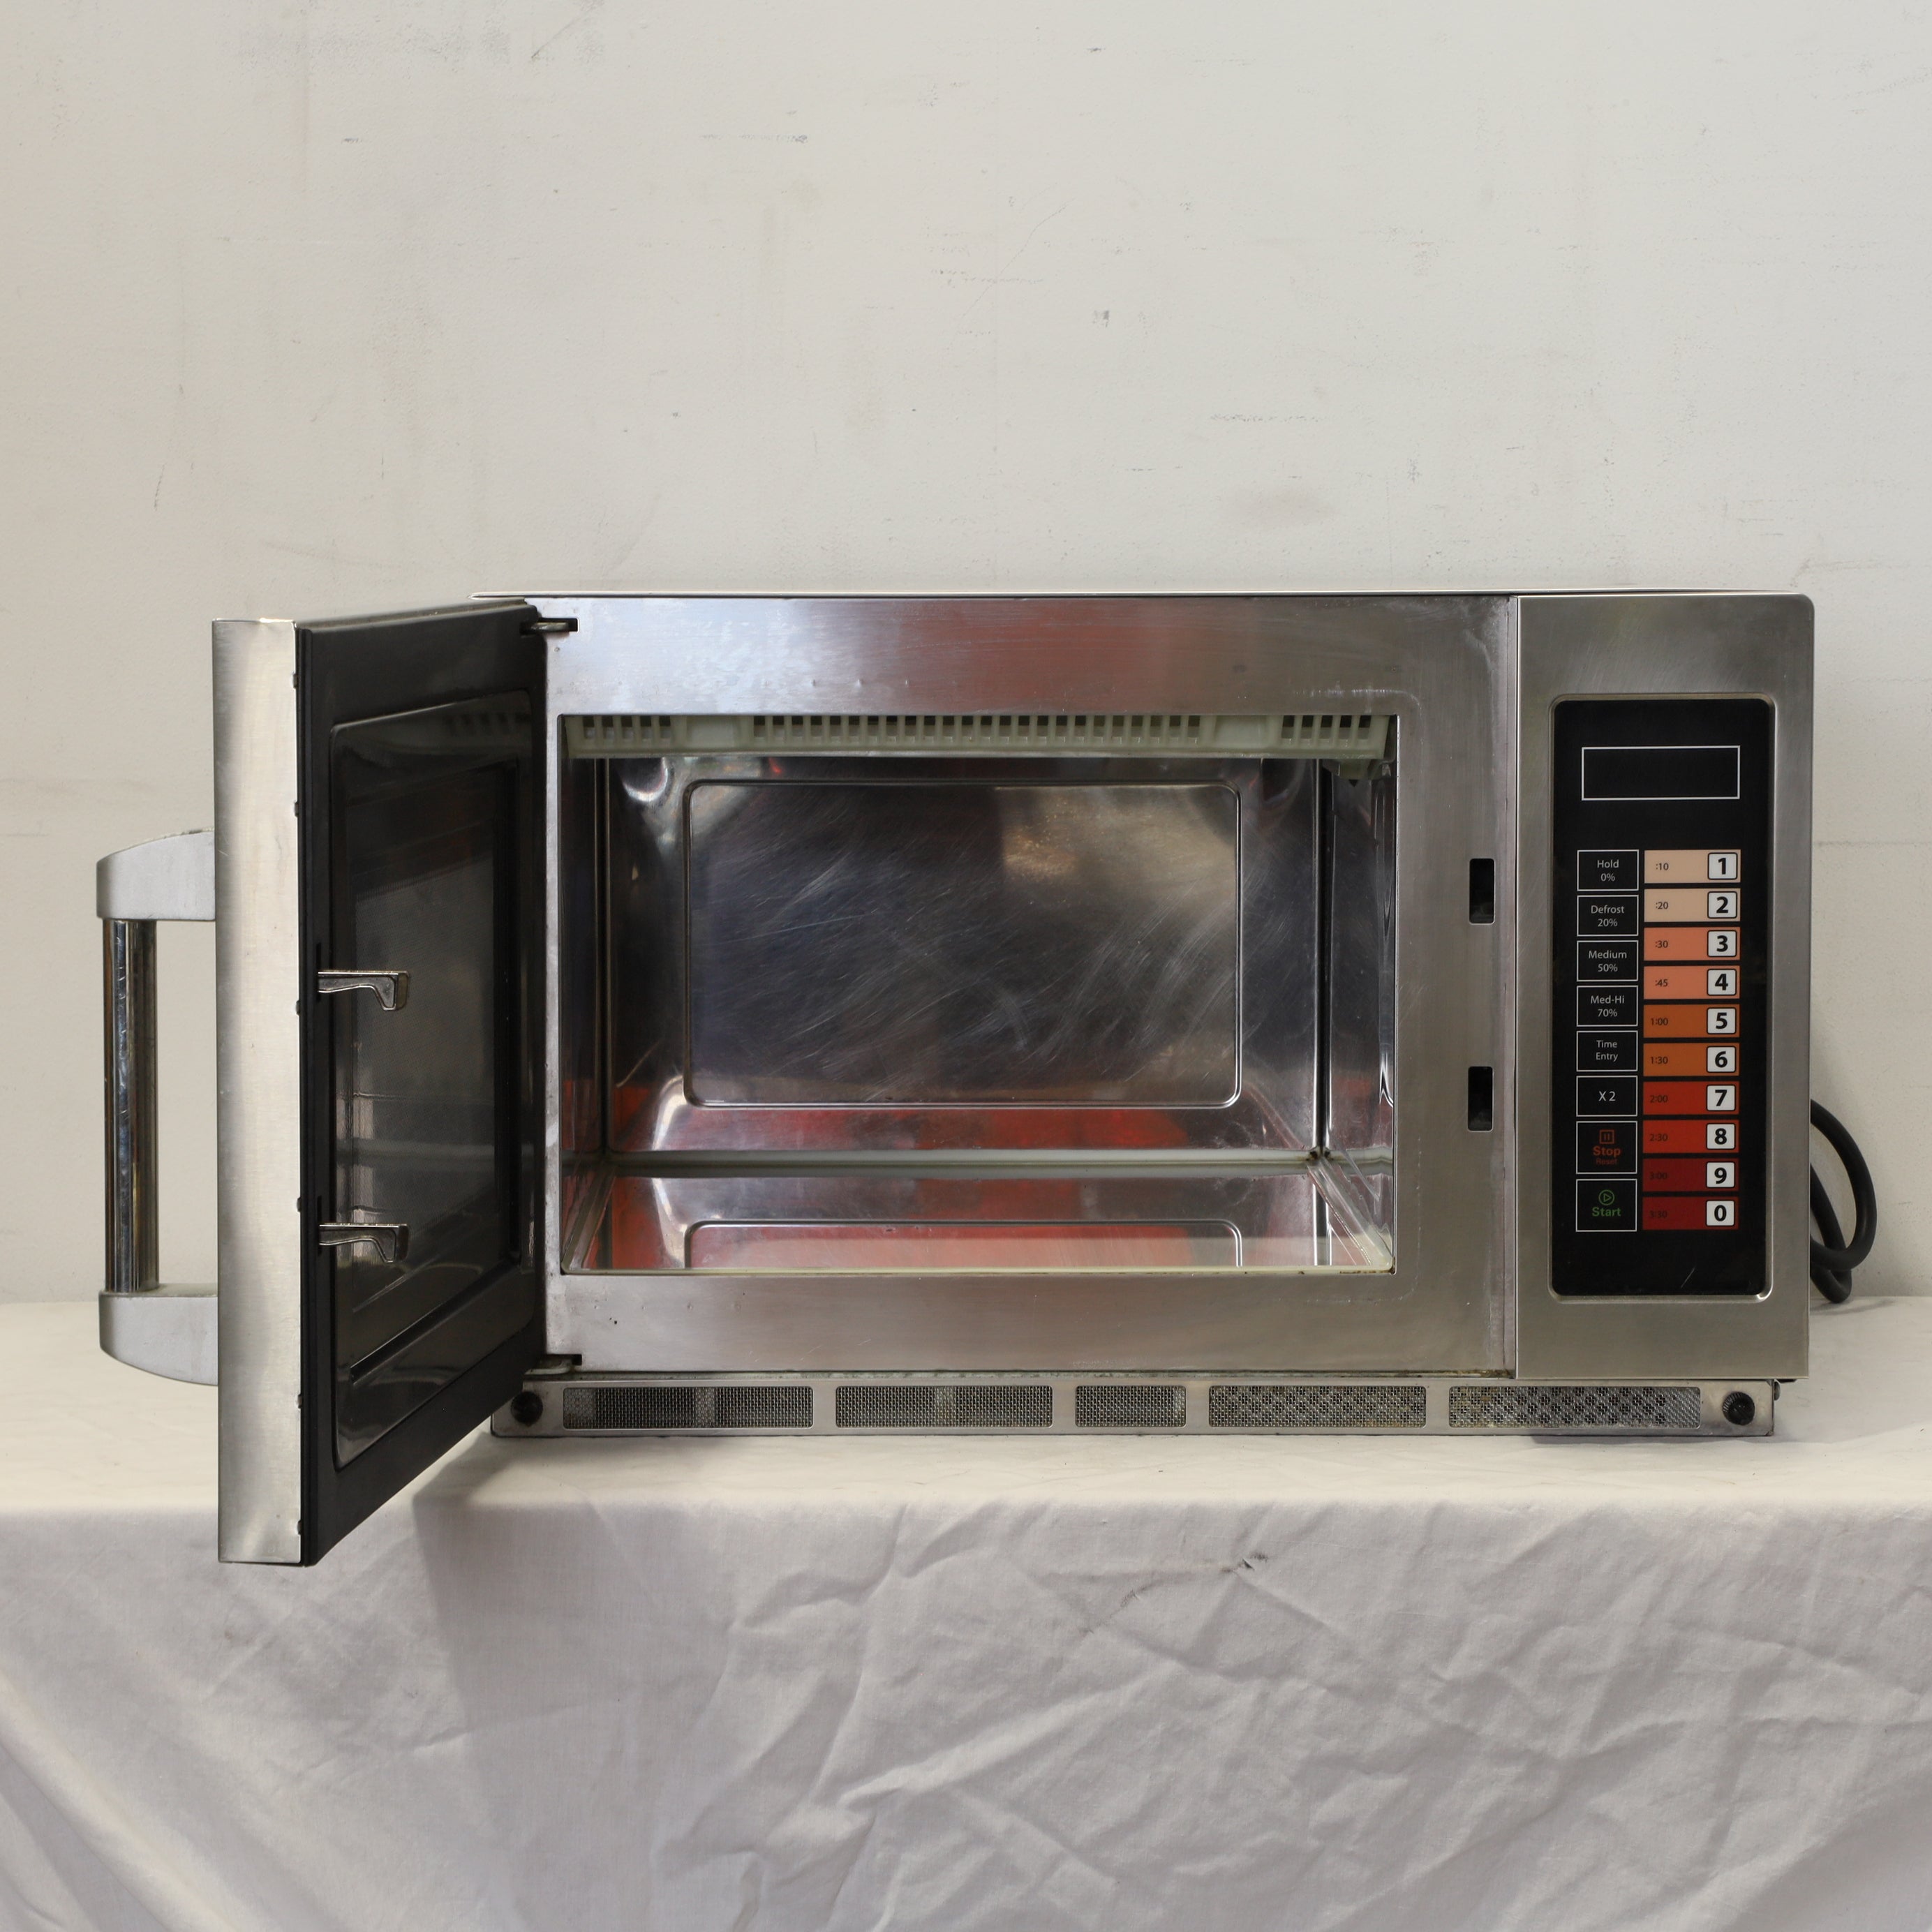 Thumbnail - Bonn CM-2100G Microwave